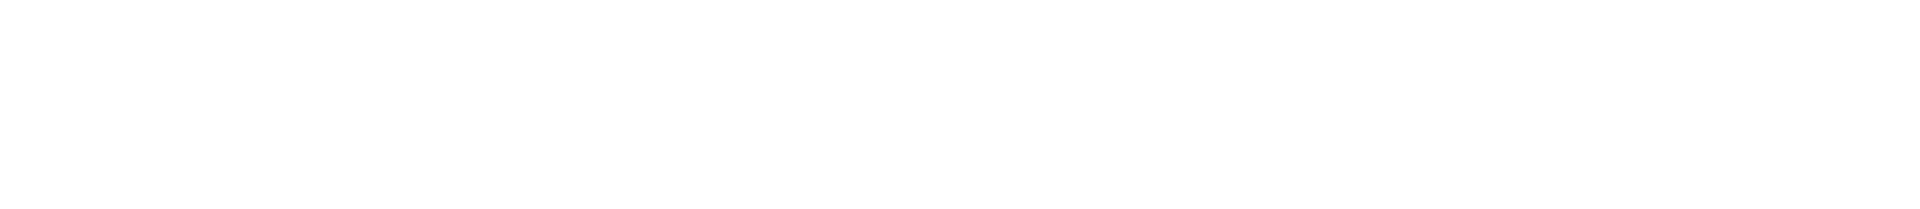 Jaspersoft Logo - Audaxis